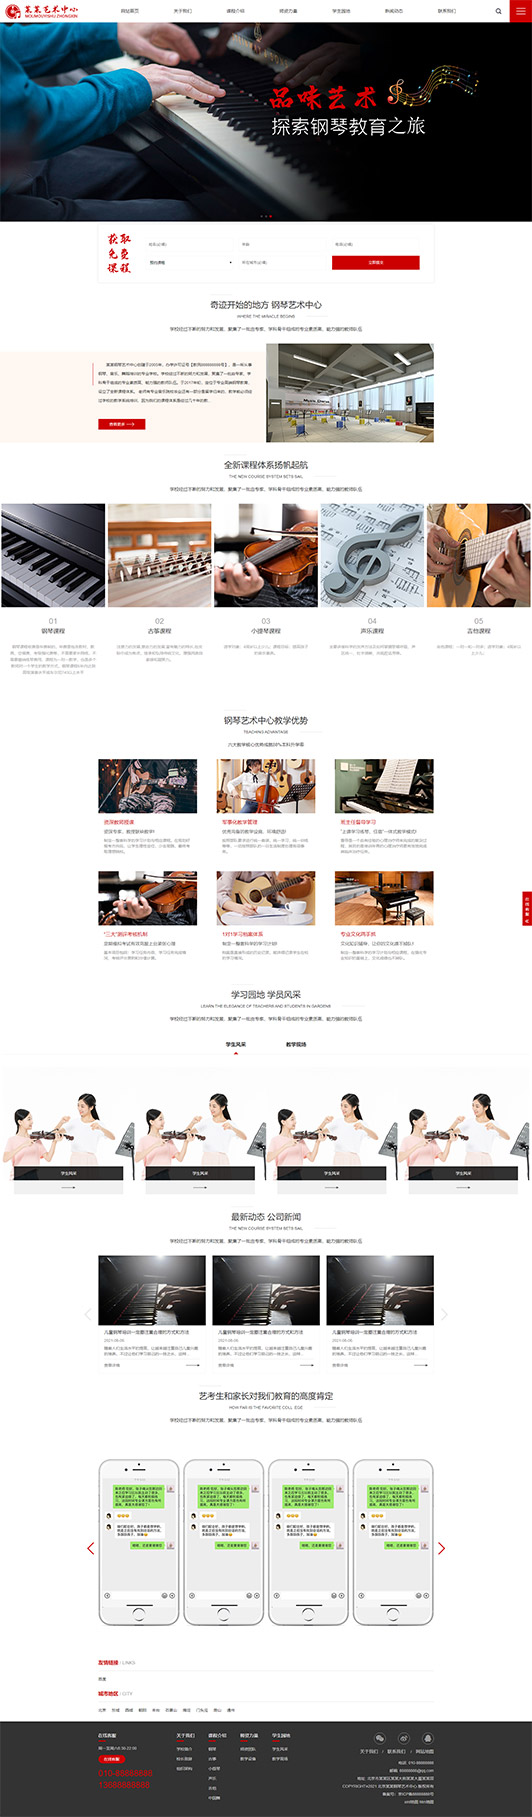 山东钢琴艺术培训公司响应式企业网站